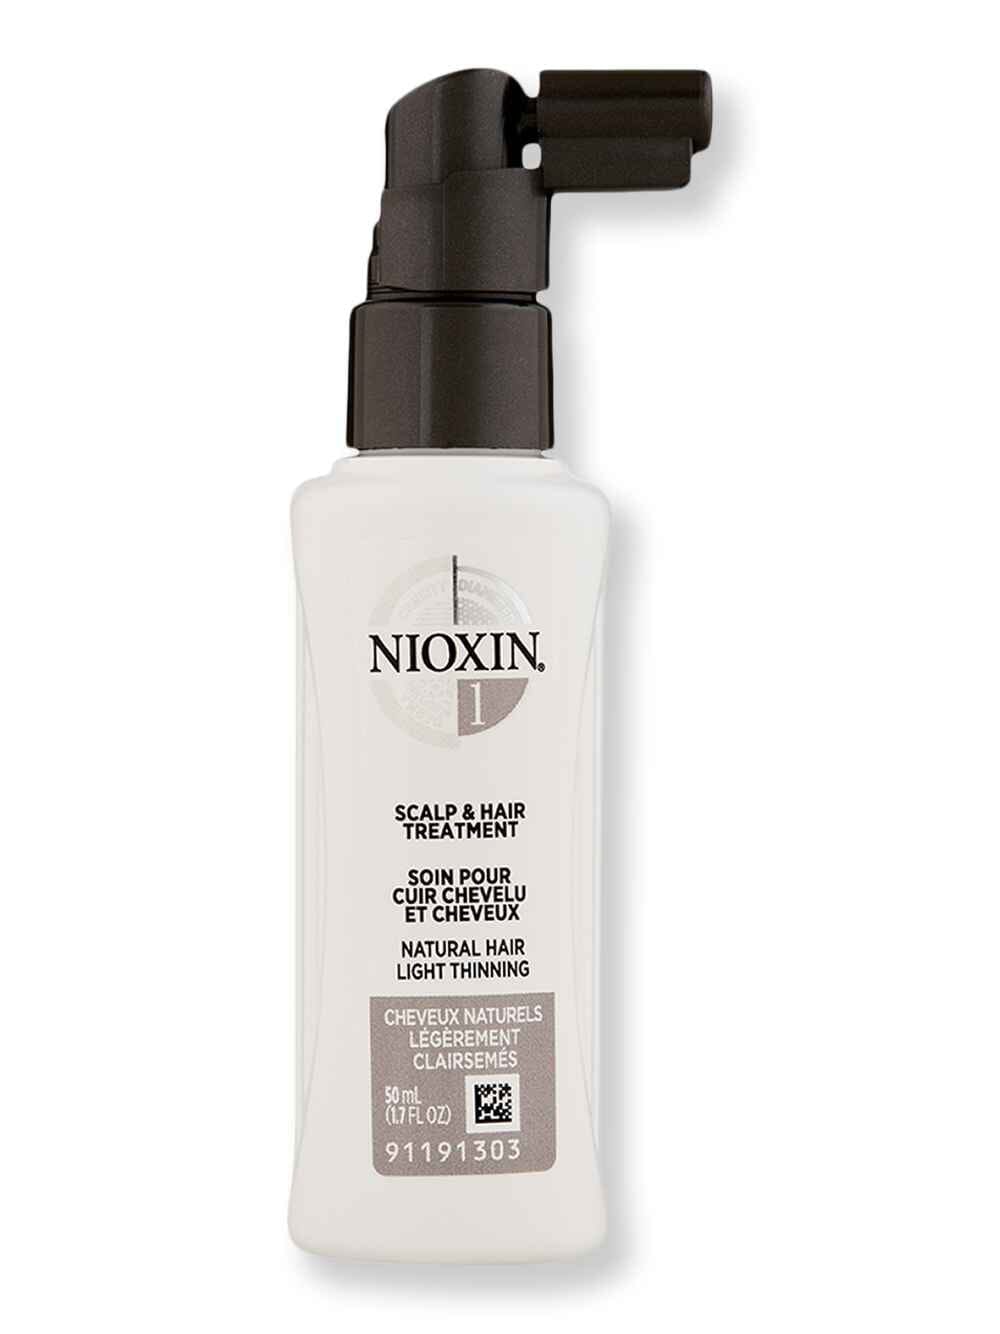 Nioxin Nioxin System 1 Treatment 1.7 oz50 ml Hair & Scalp Repair 